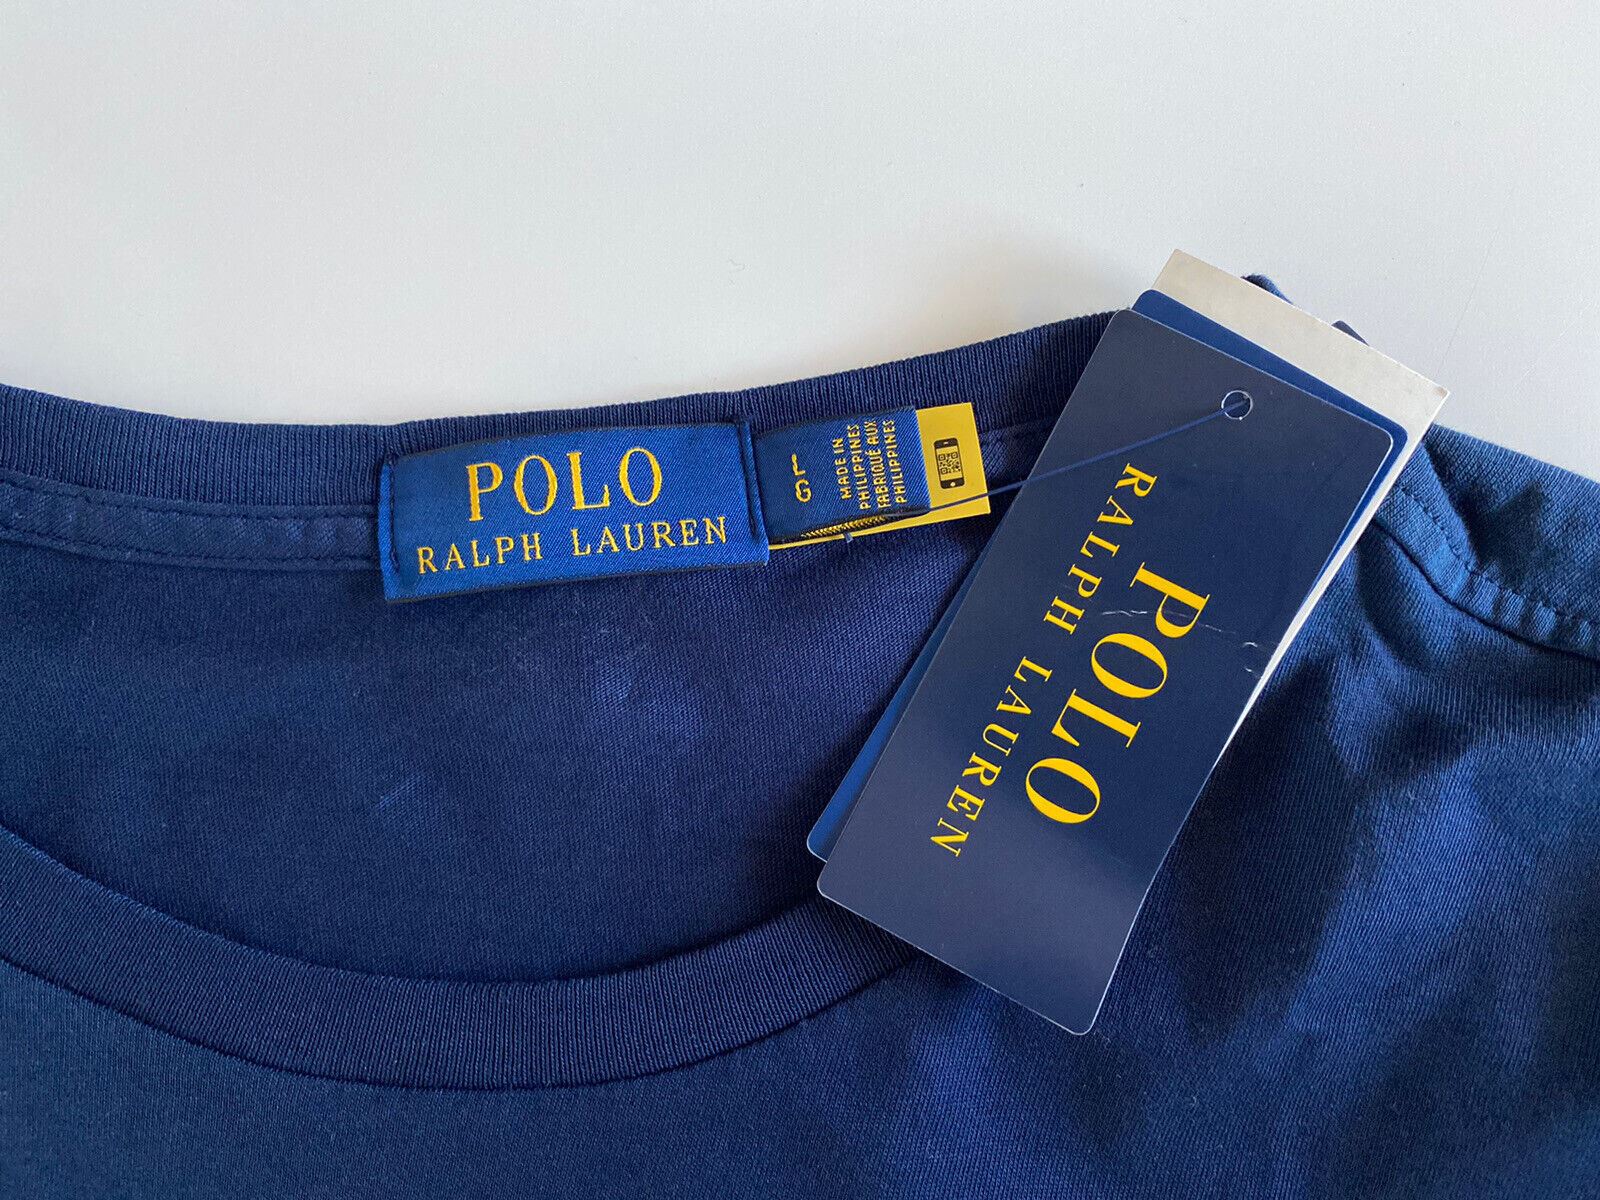 NWT Polo Ralph Lauren Футболка с коротким рукавом и фирменным логотипом, синяя, большая 